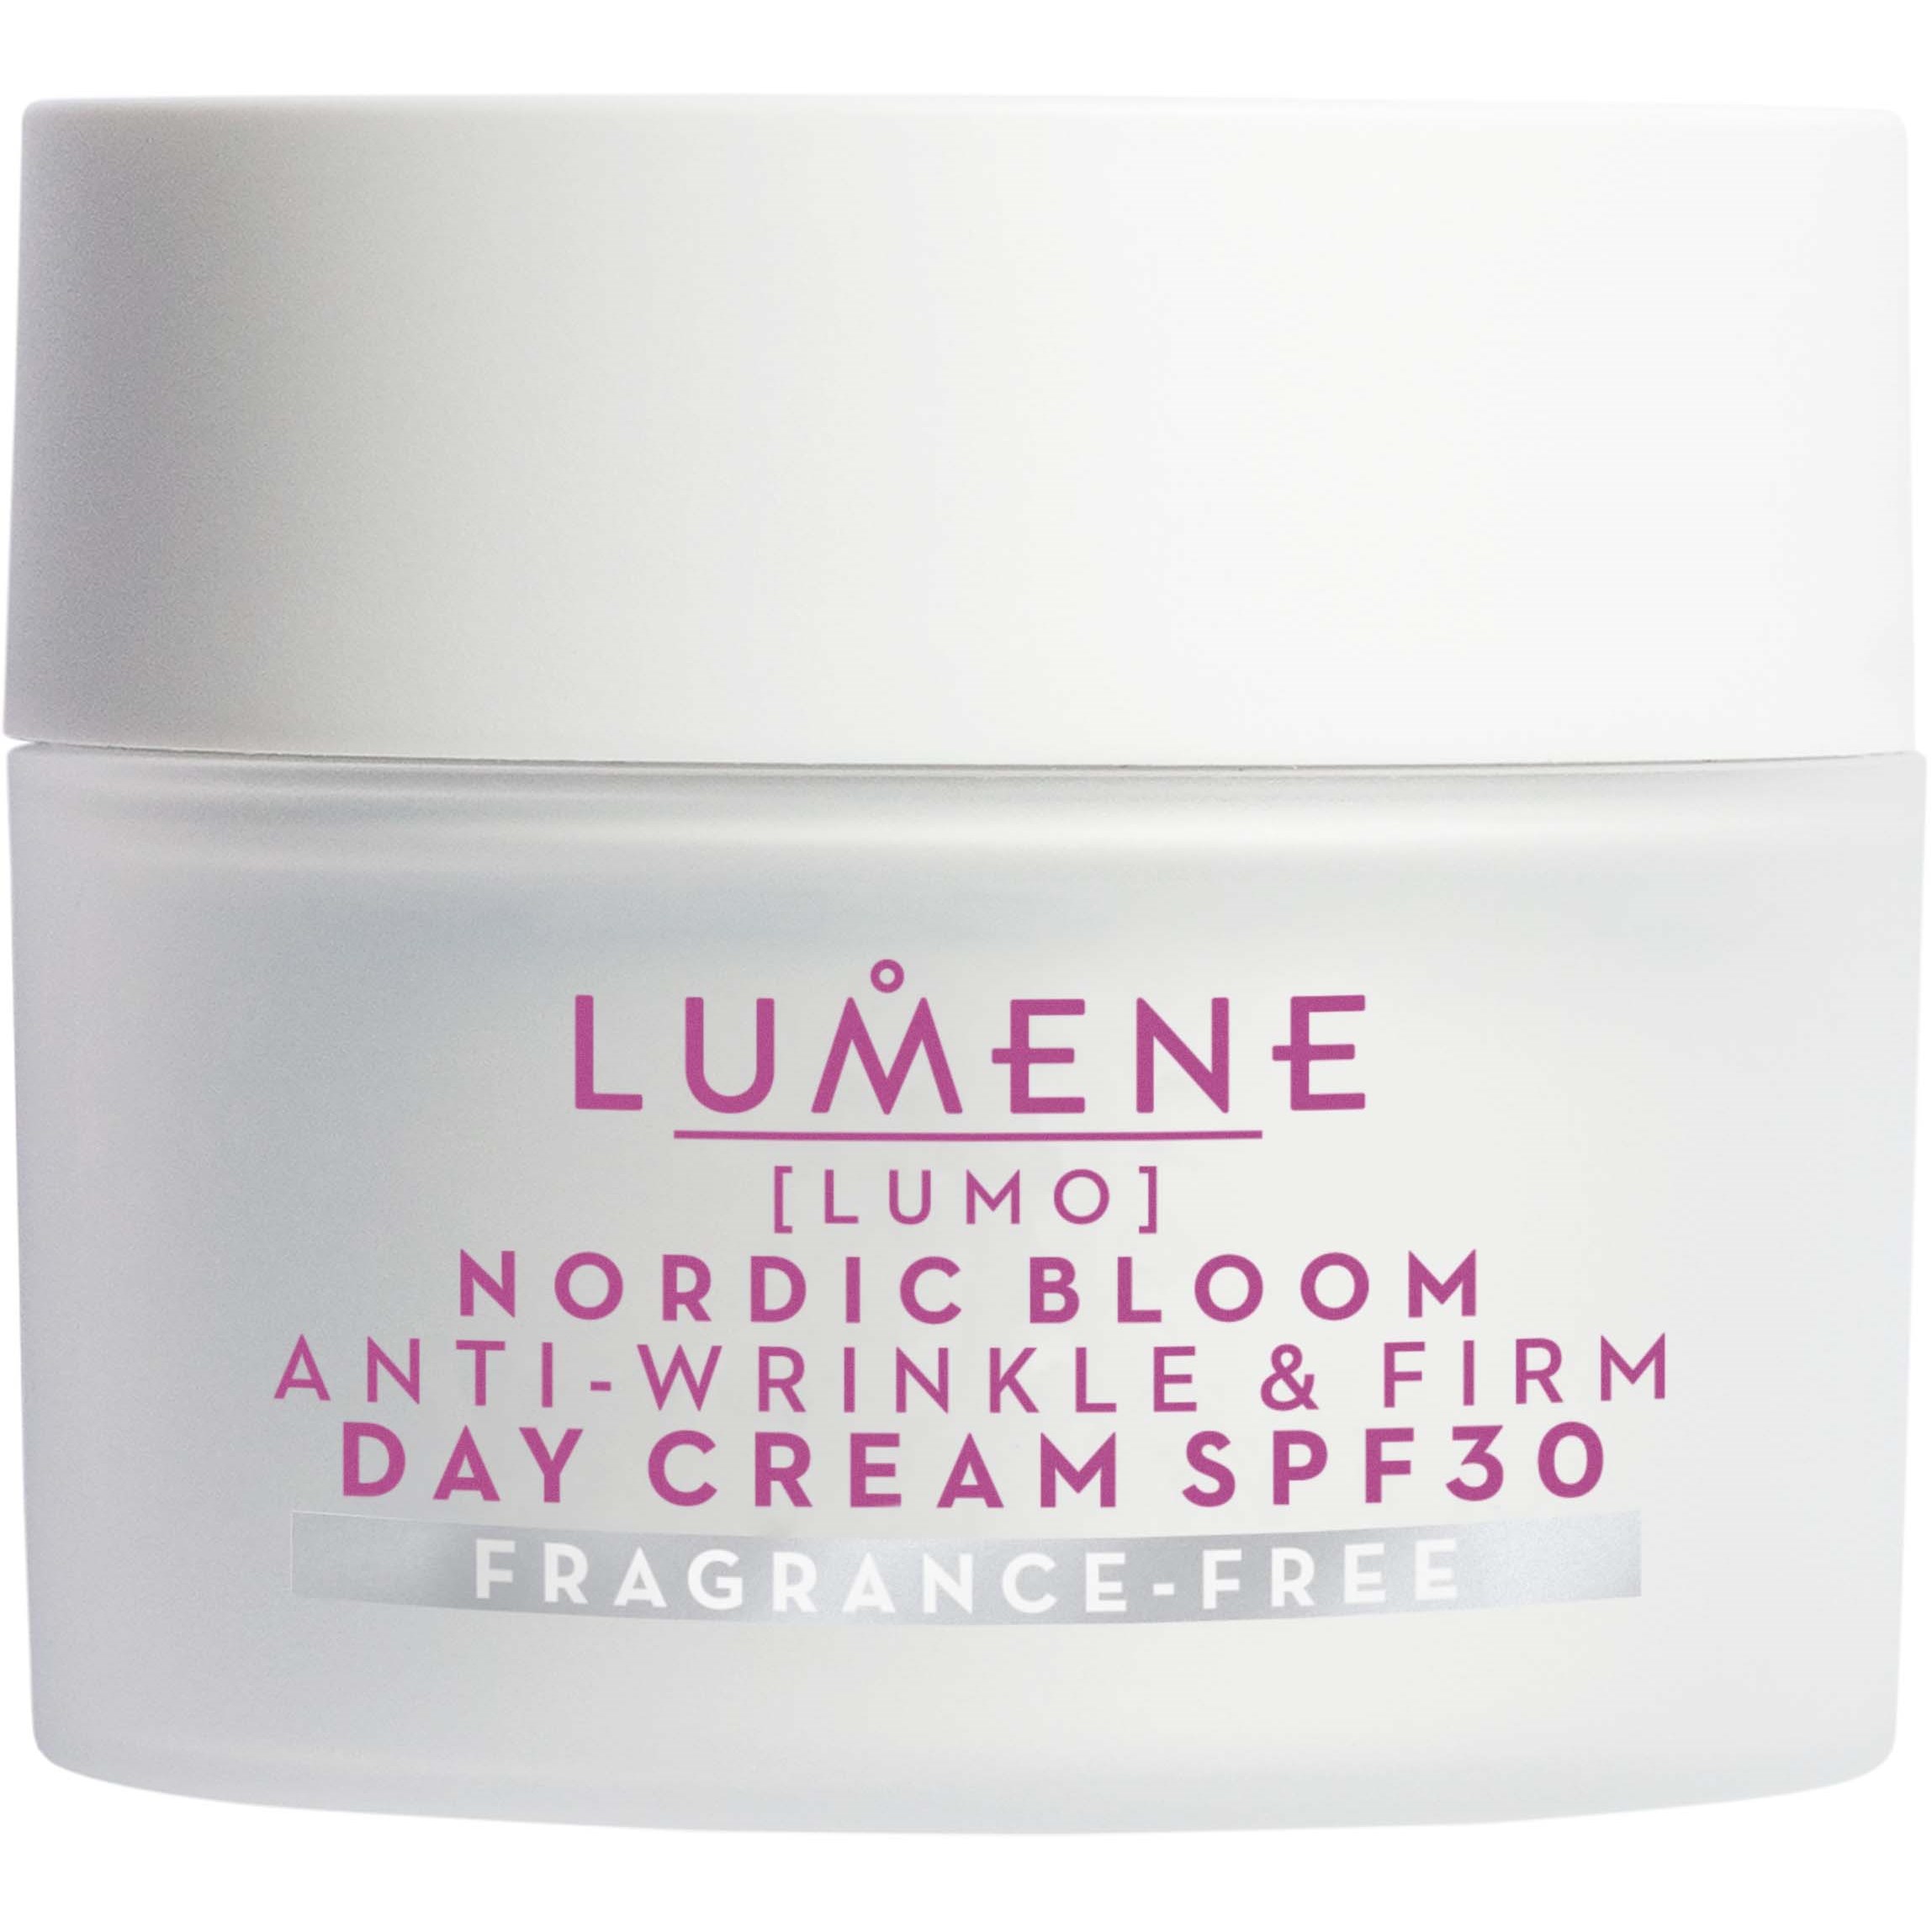 Läs mer om Lumene Nordic Bloom Anti-Wrinkle & Firm Day Cream SPF30 Fragrance Free